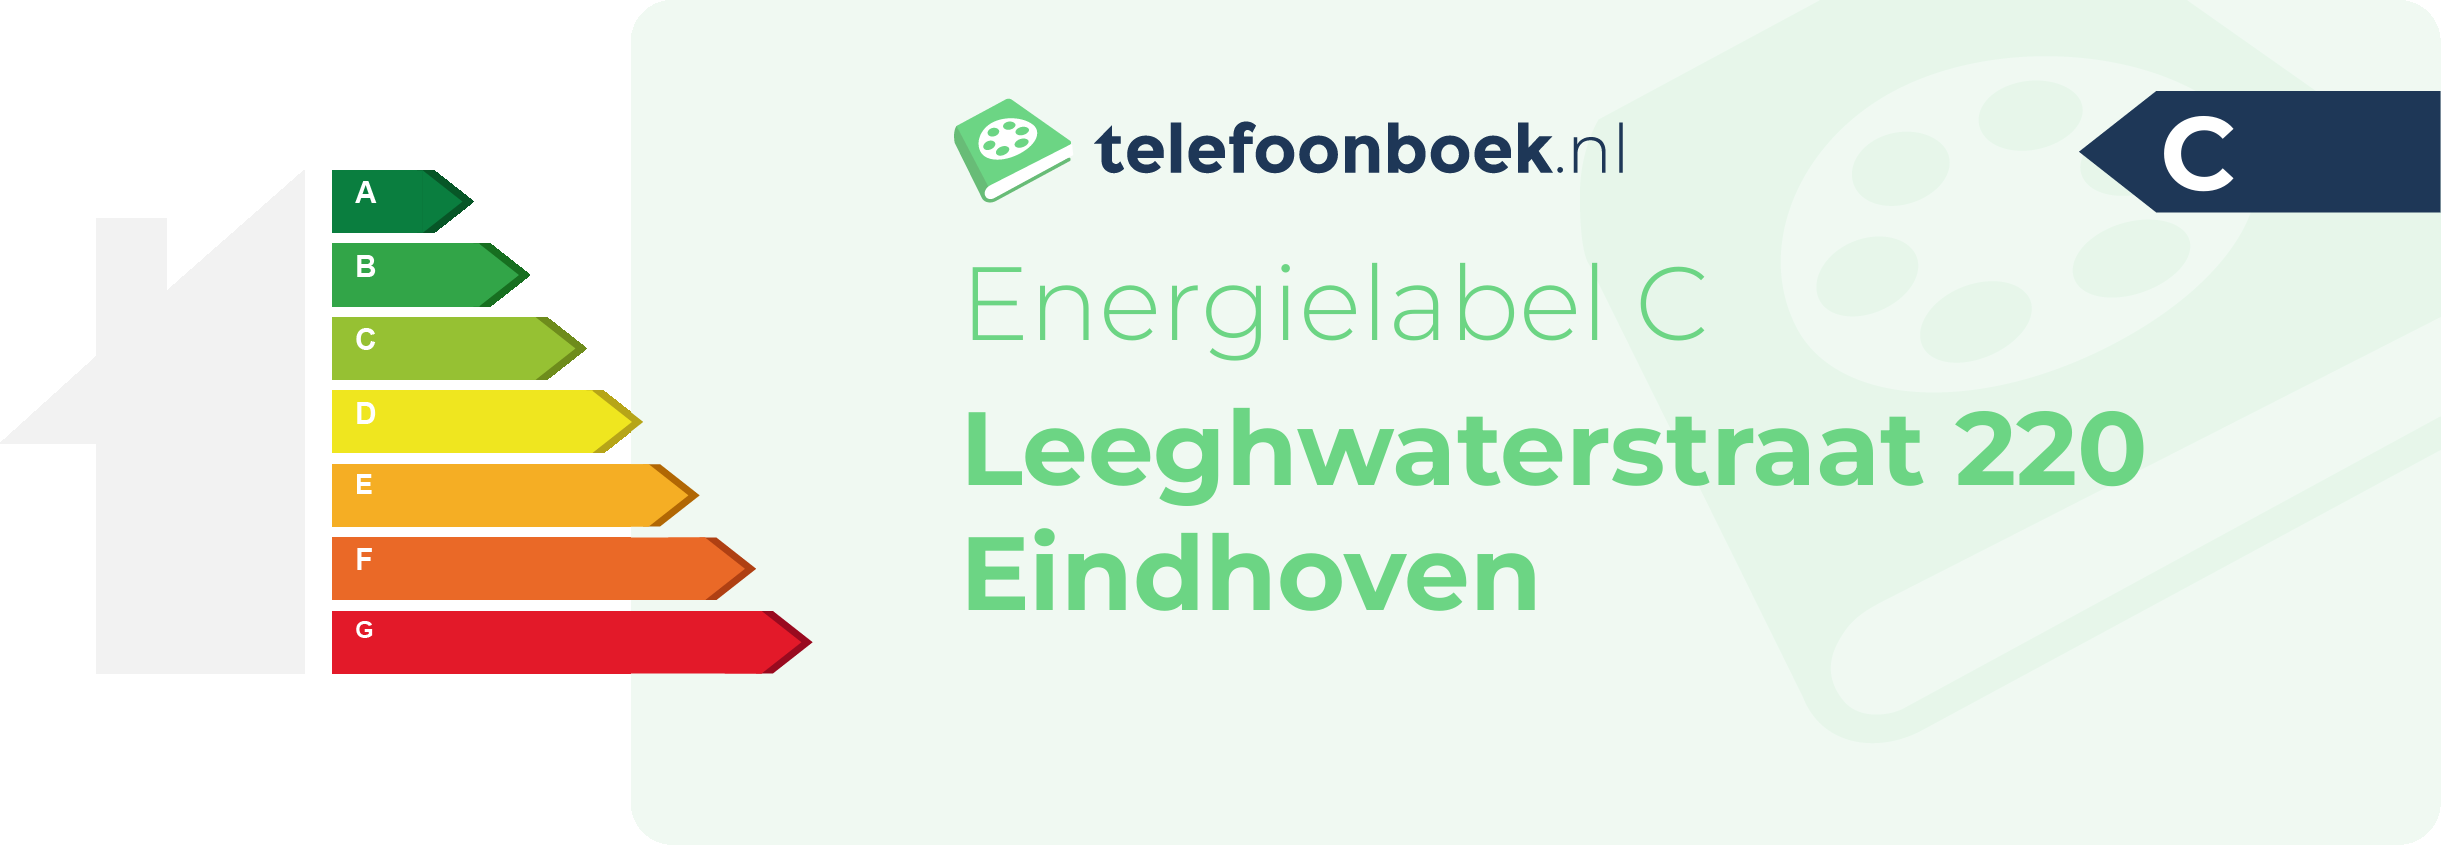 Energielabel Leeghwaterstraat 220 Eindhoven